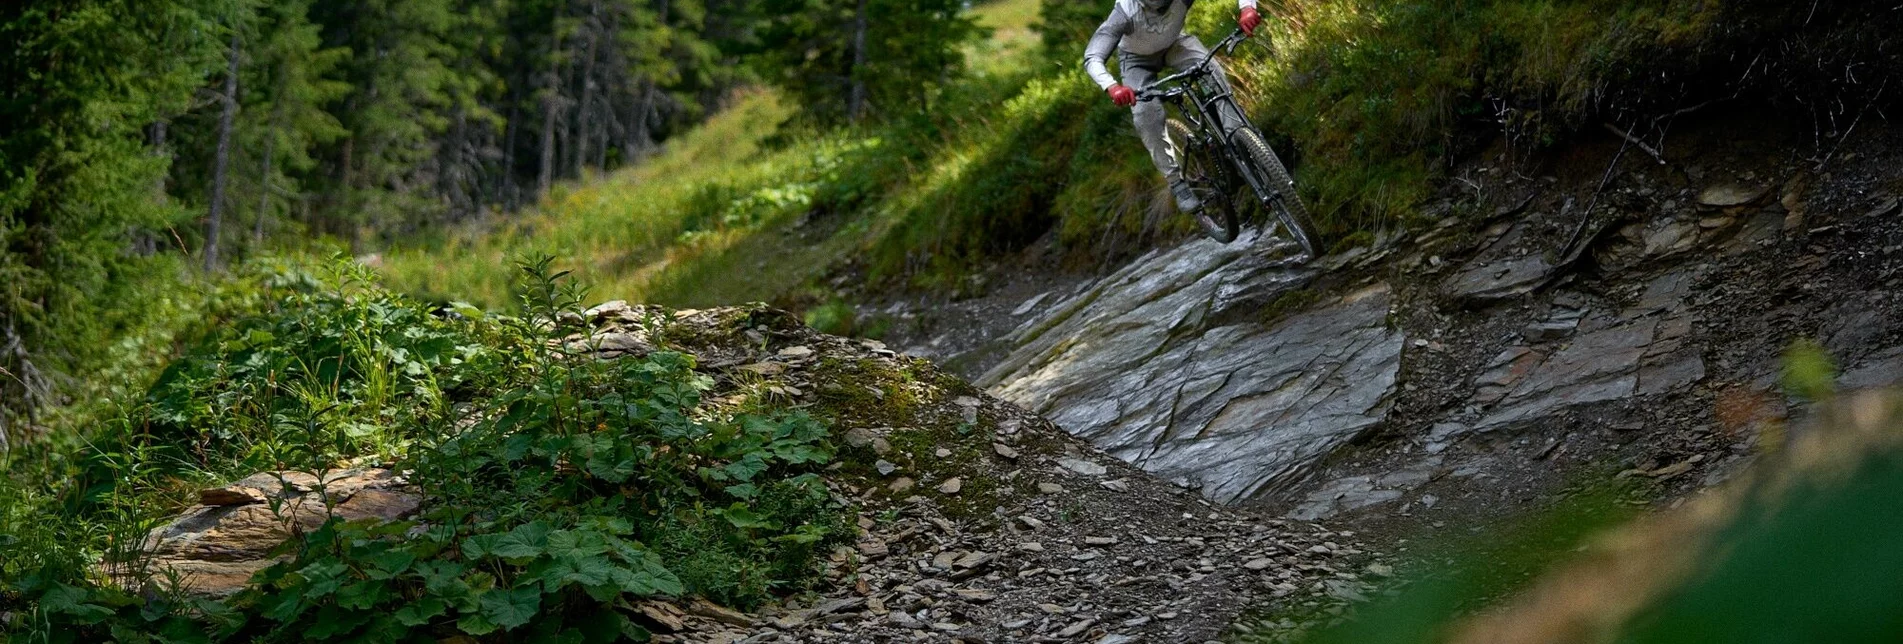 Mountain Biking Pro Downhill - Touren-Impression #1 | © Erlebnisregion Schladming-Dachstein